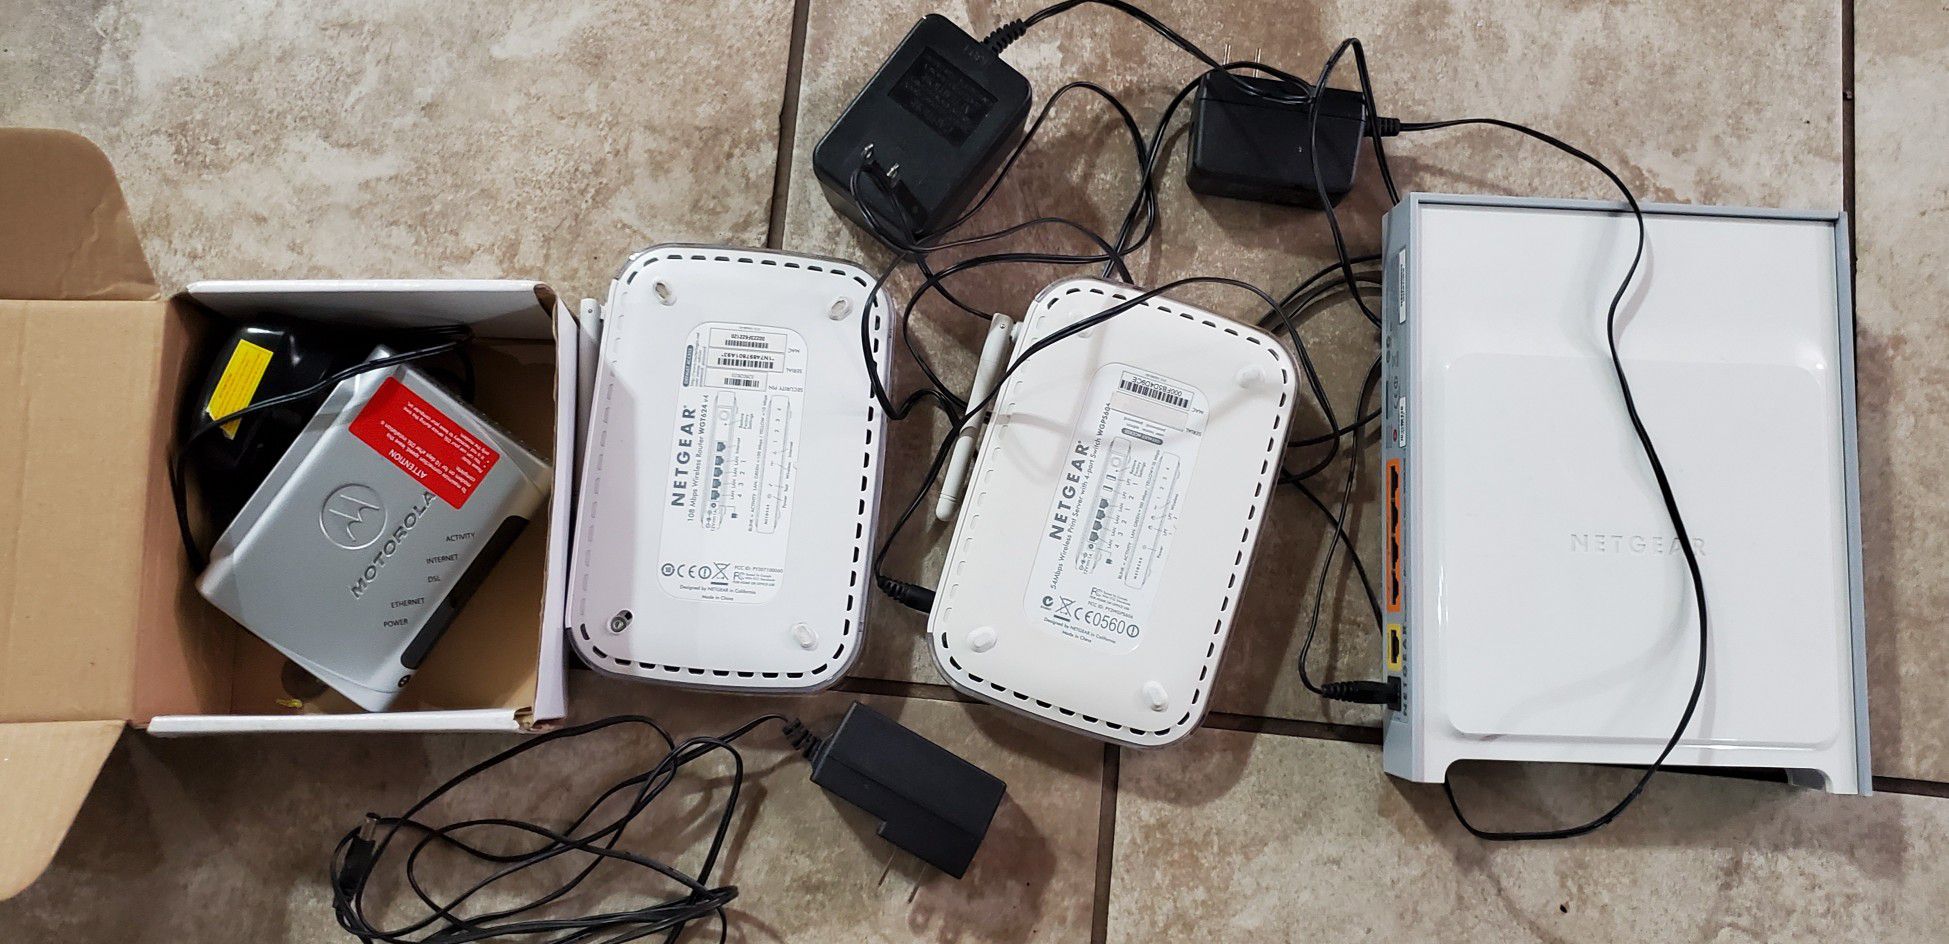 3 NETGEAR router and Motorola modem